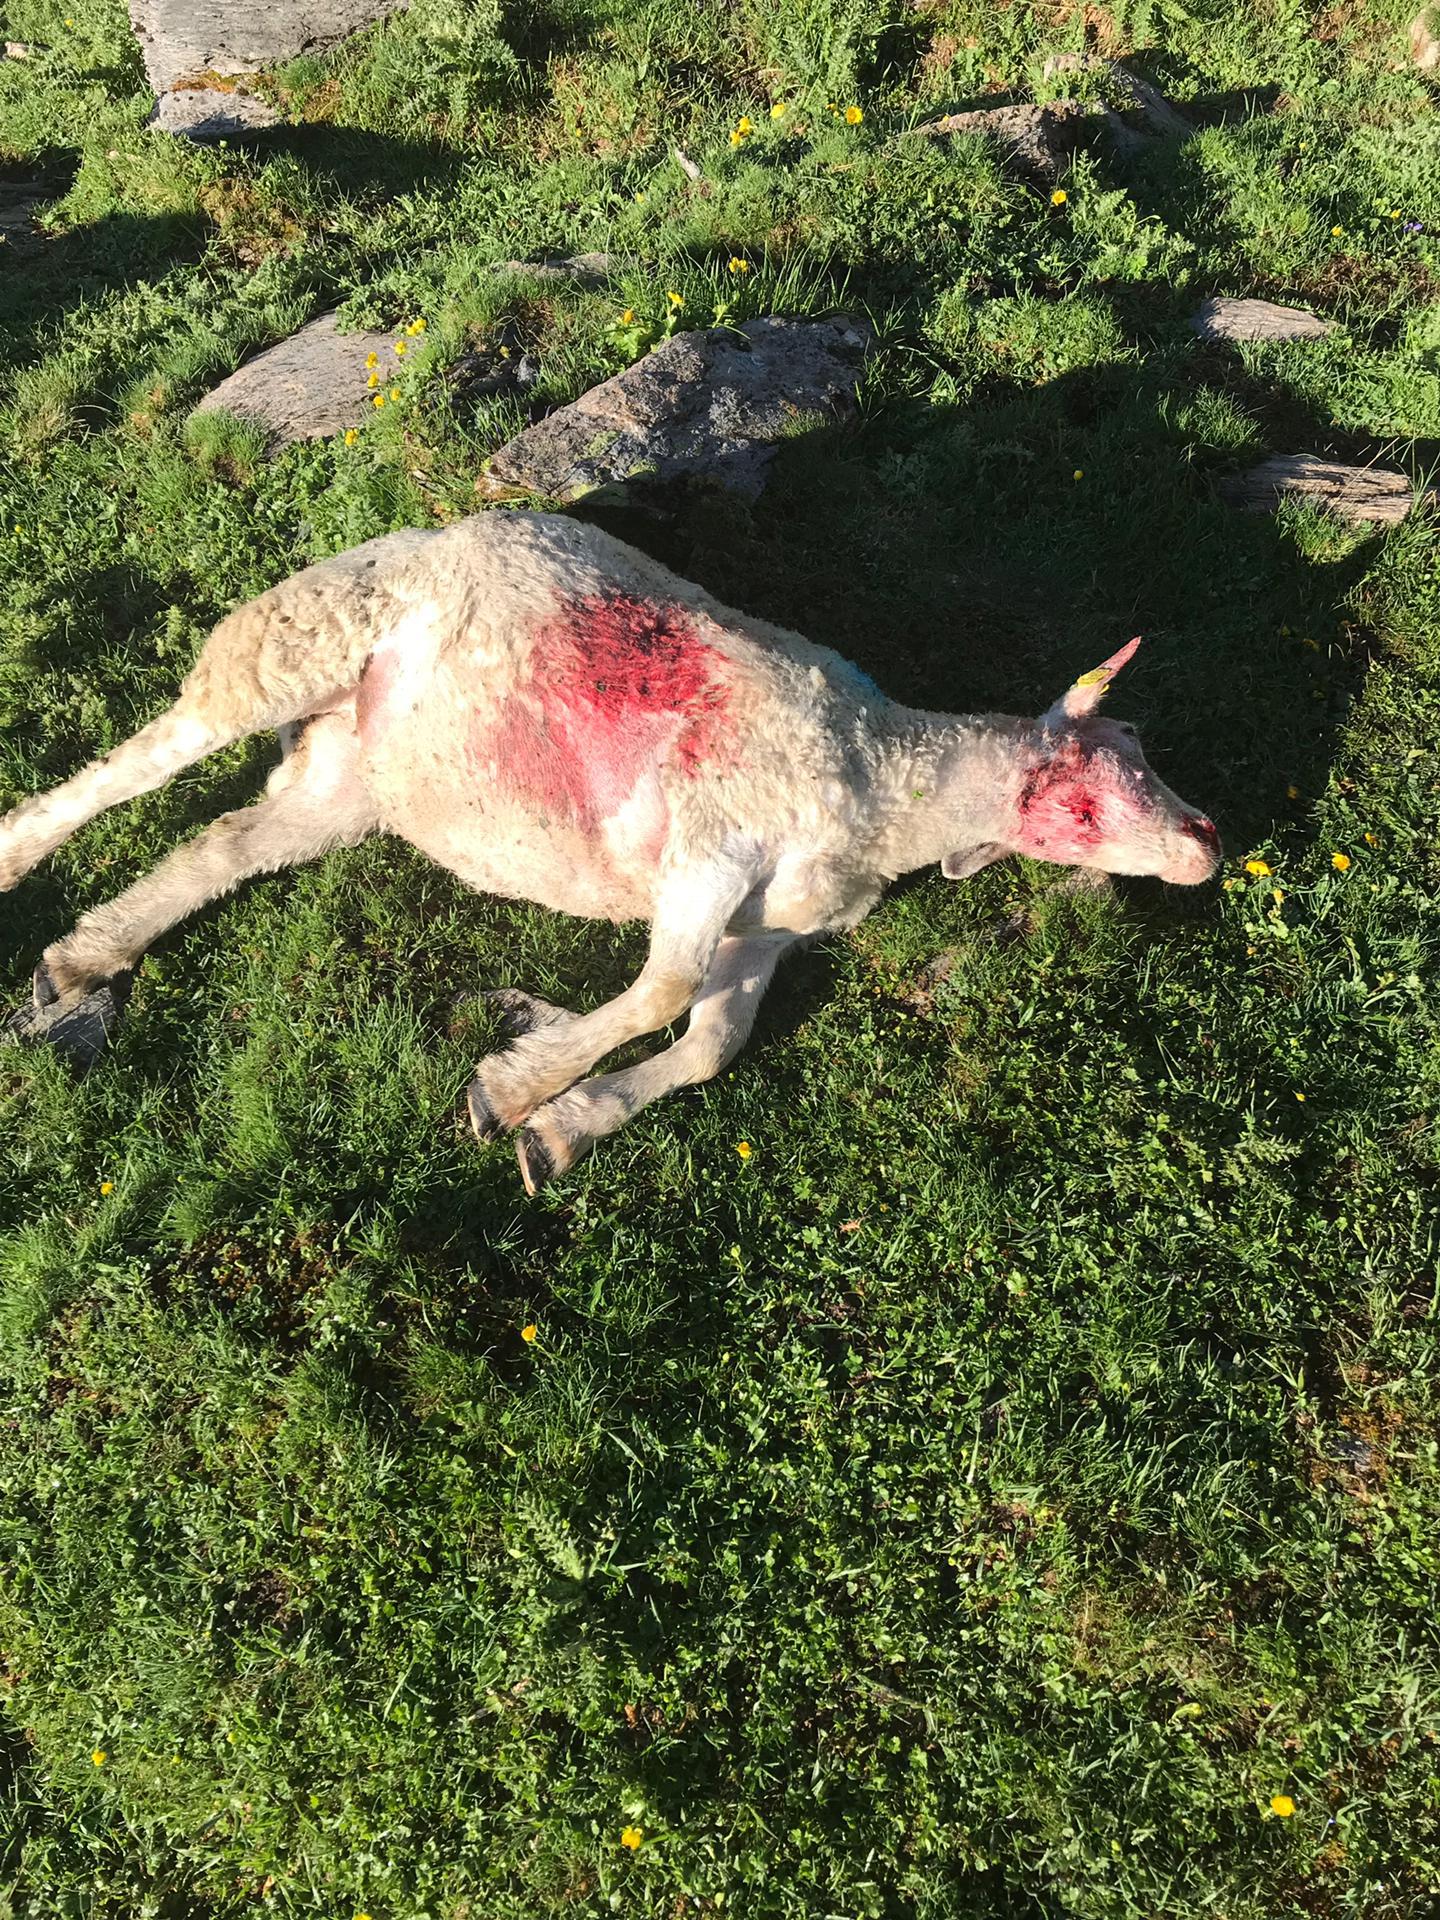 Selon le service de la chasse, les morsures sur le corps du mouton seraient celles d'un loup.